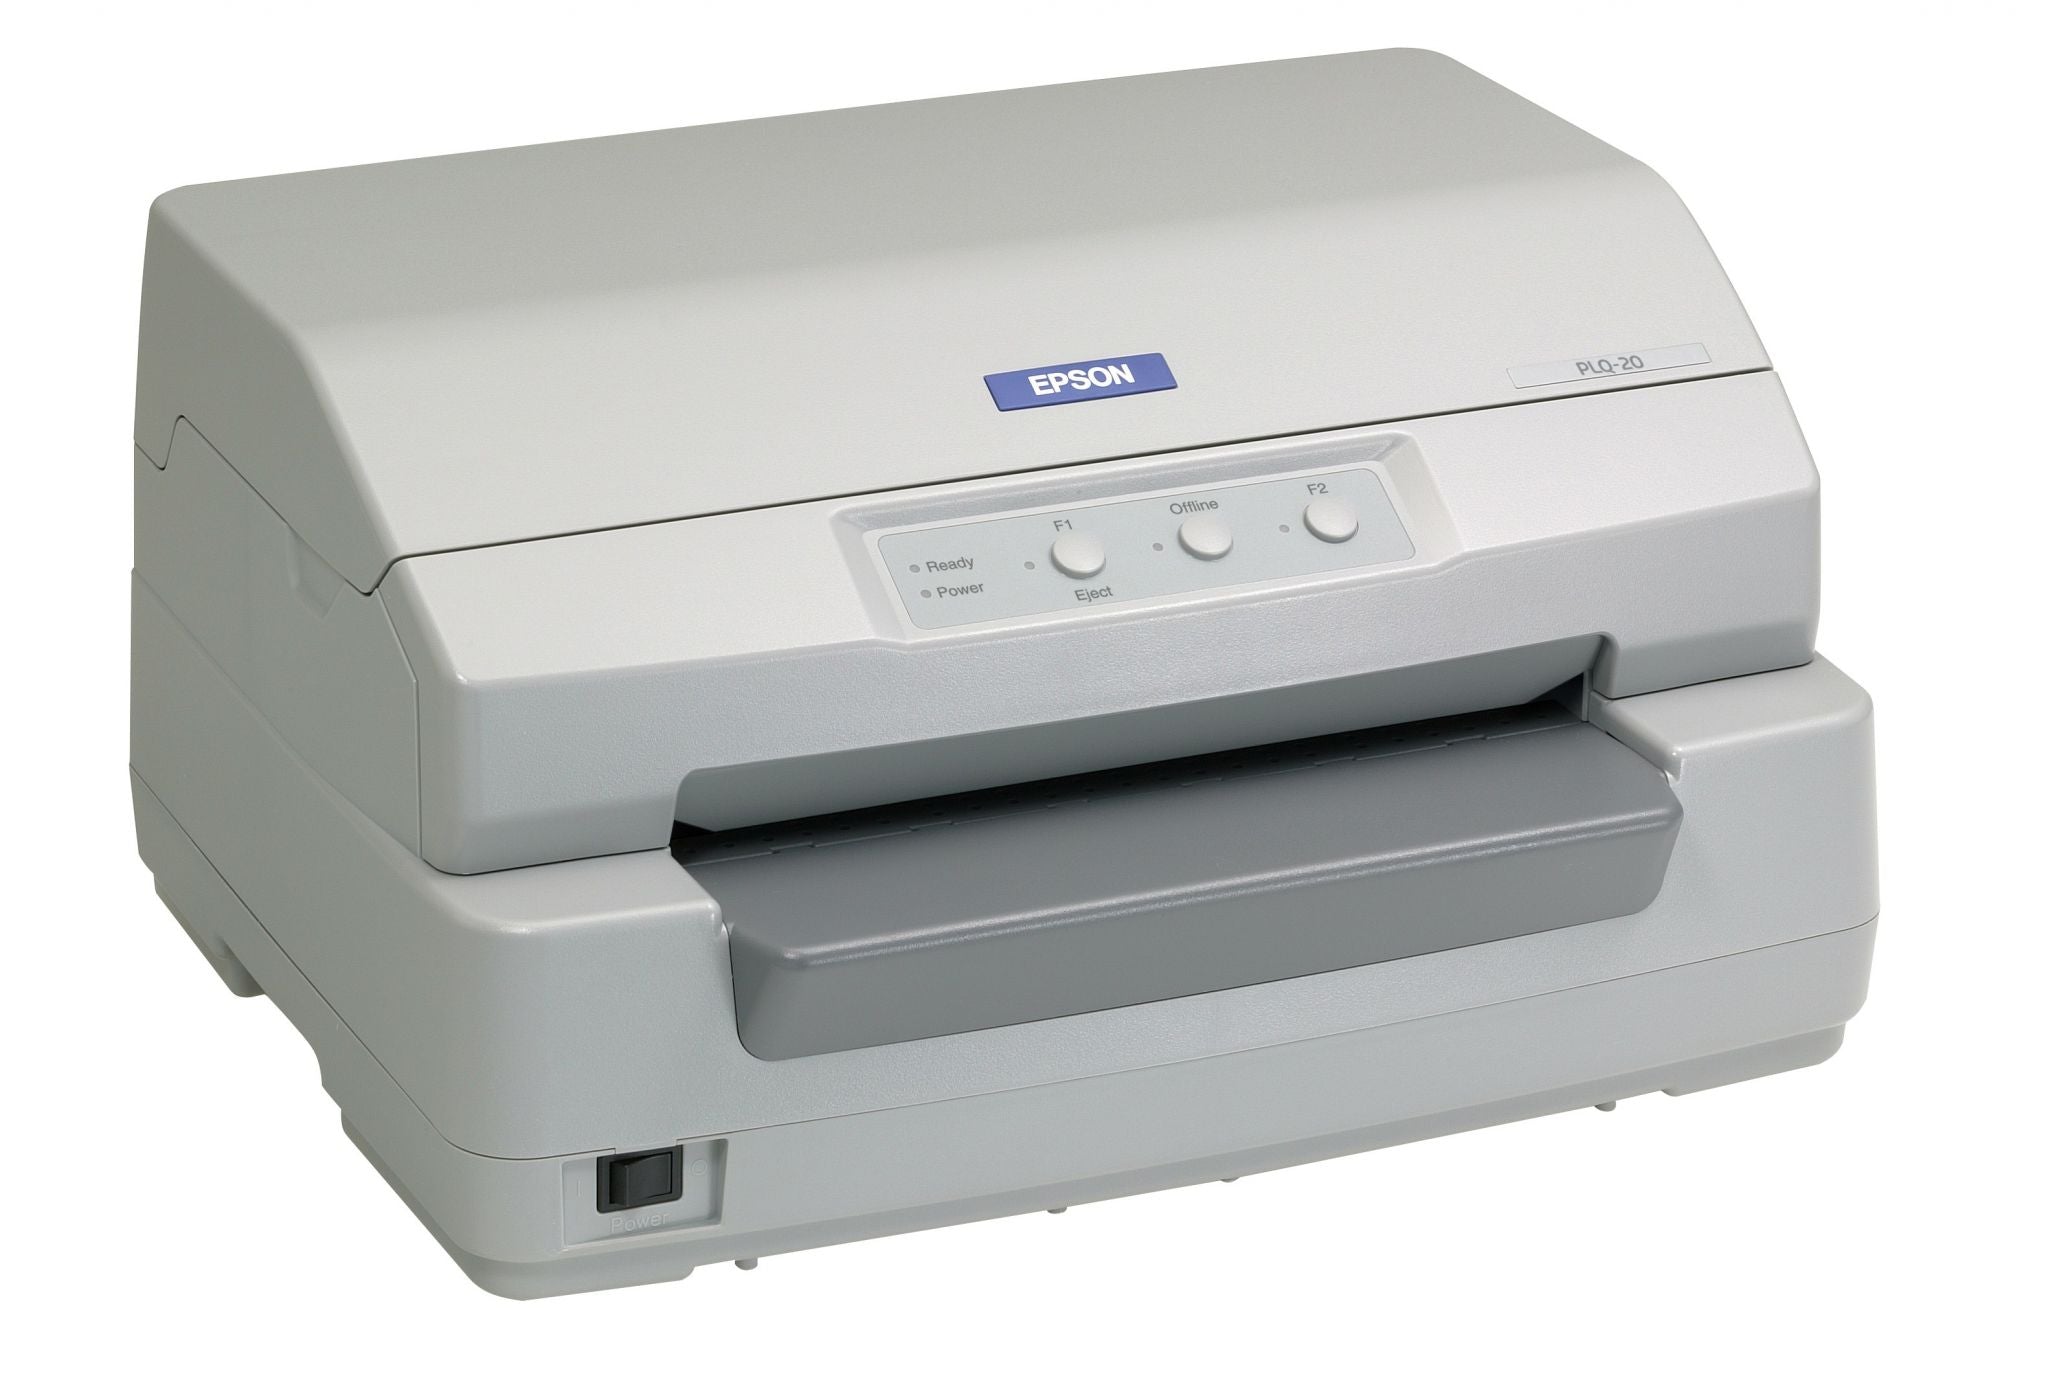 Epson PLQ-20 imprimante matricielle (à points) Couleur 576 caractères par seconde Epson